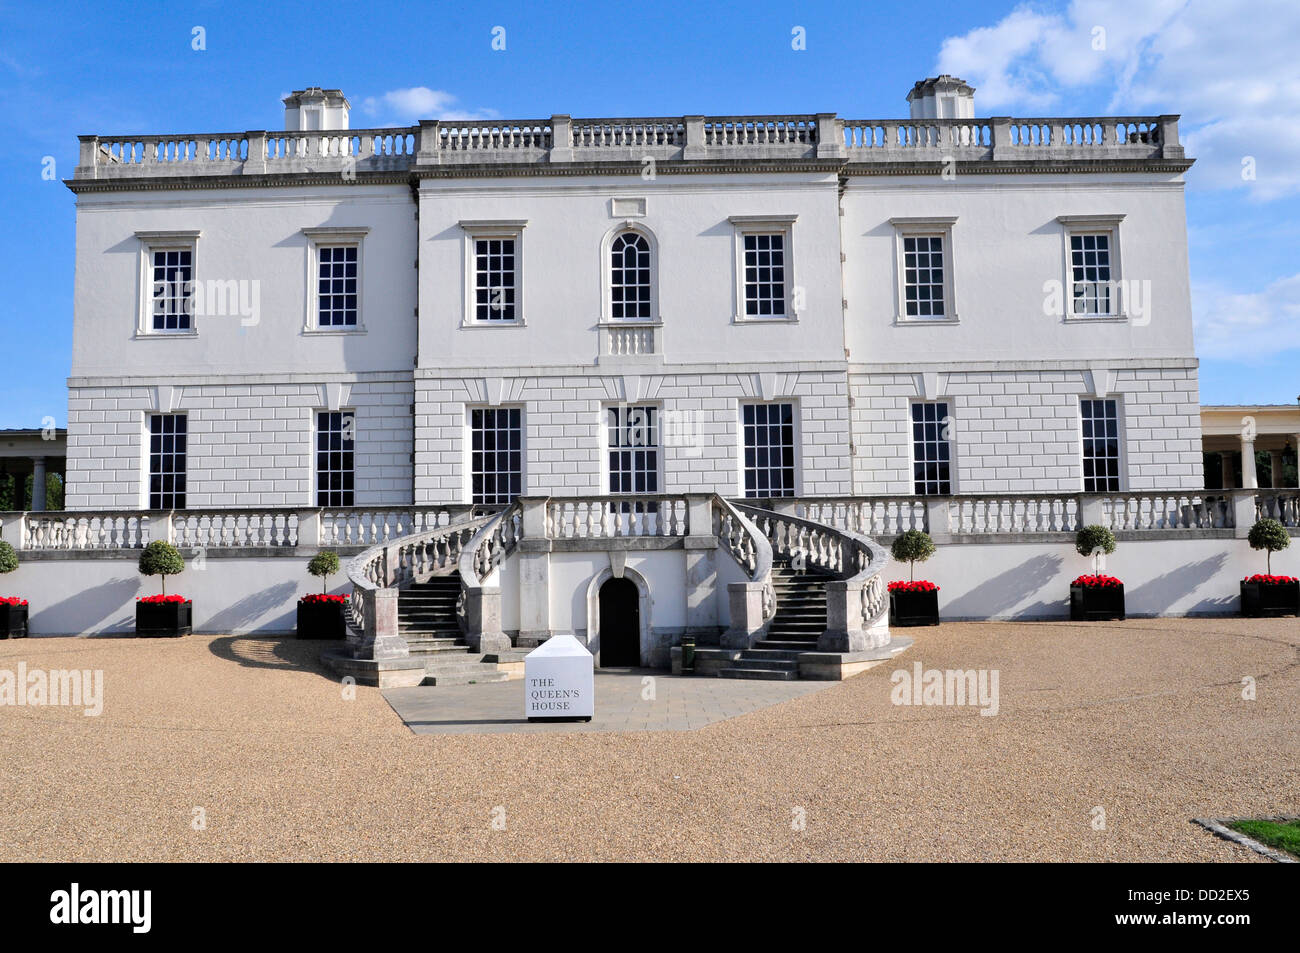 Une vue générale de la Queen's House à Greenwich, London, UK Banque D'Images